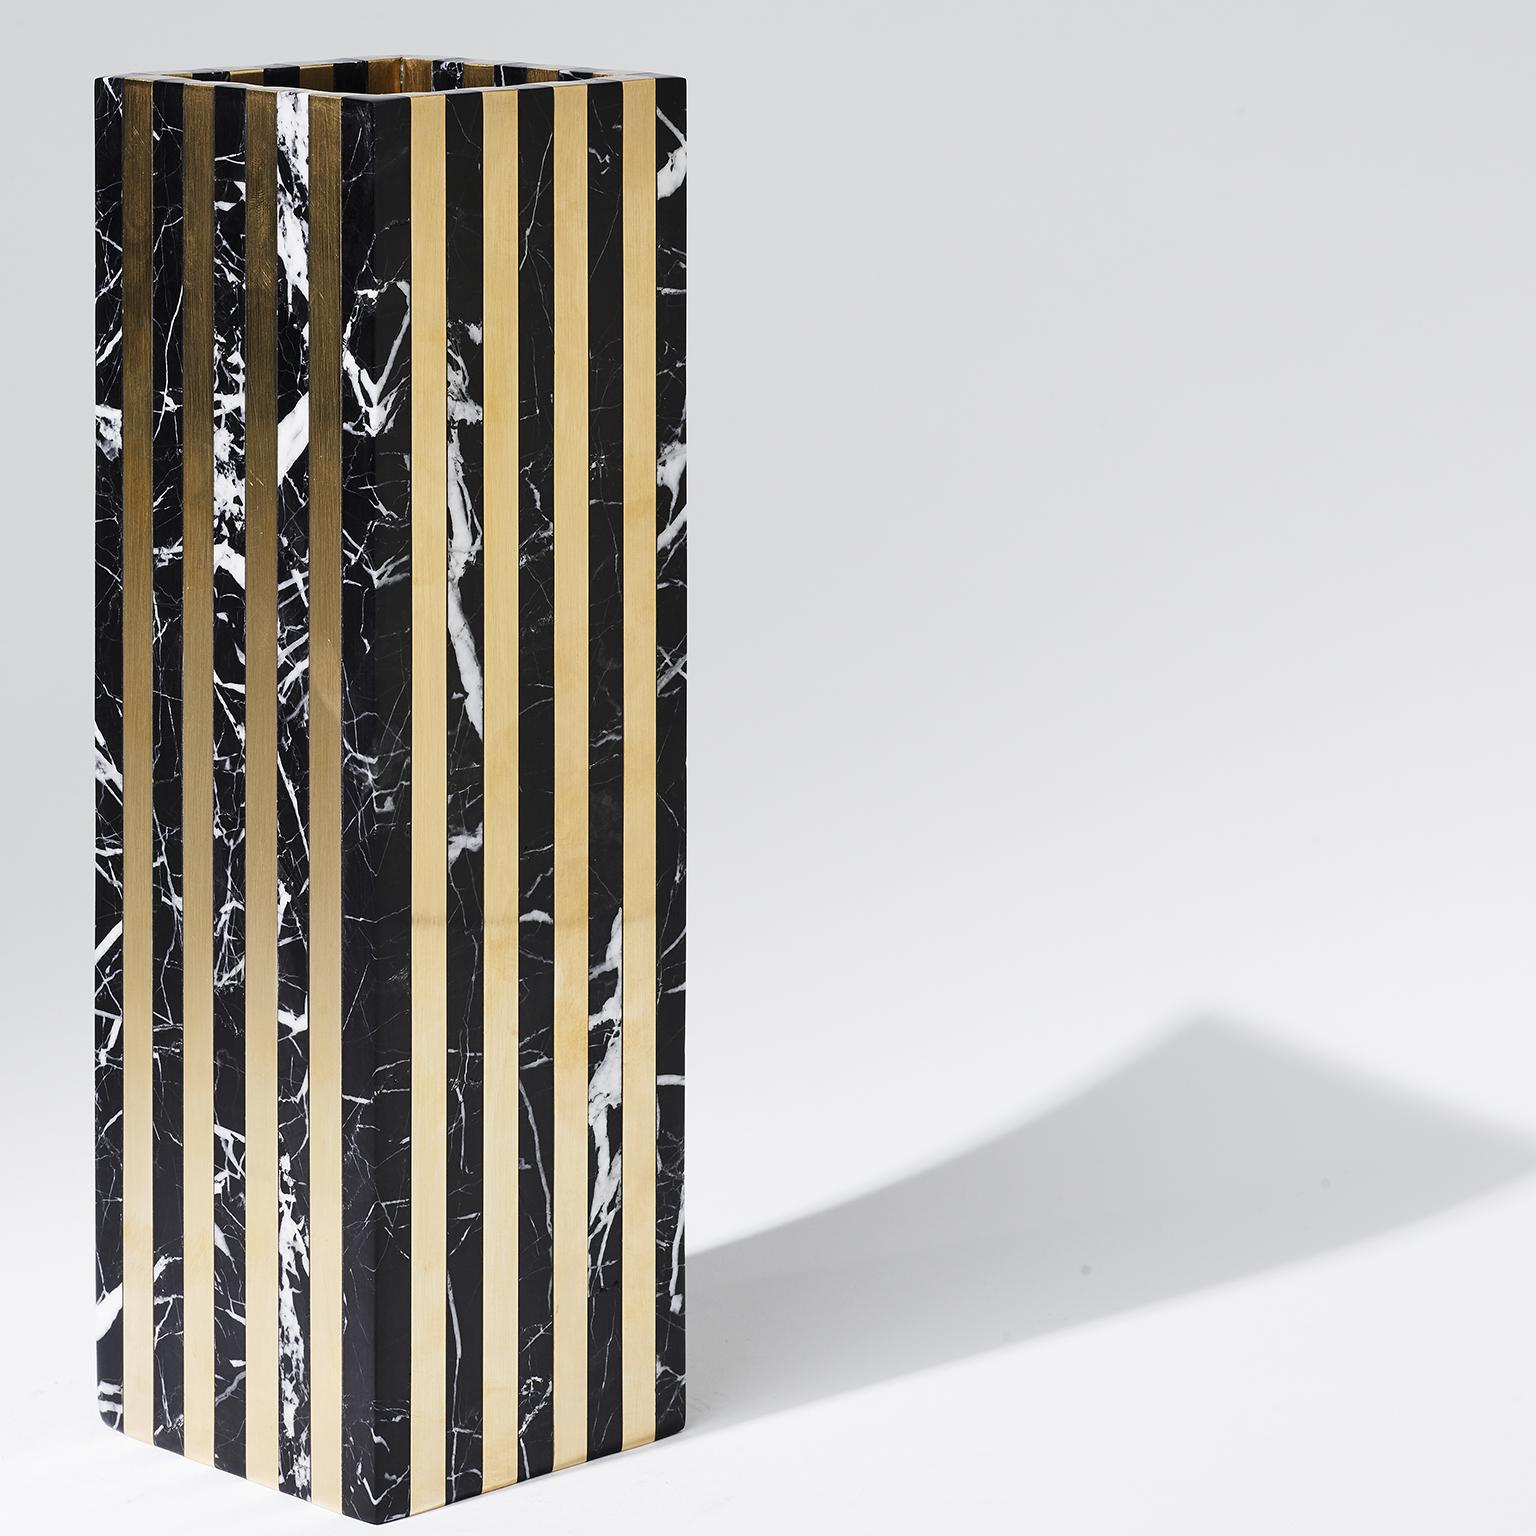 Diese Vase aus massivem Messing und Marmor ist ein Wunderwerk der Steinbearbeitung und das Glanzstück der Accessoire-Kollektion von Greg Natale. Dynasty präsentiert uns eine imposante Reihe von Säulen aus Messing und reich geädertem Nero-Marmor, die